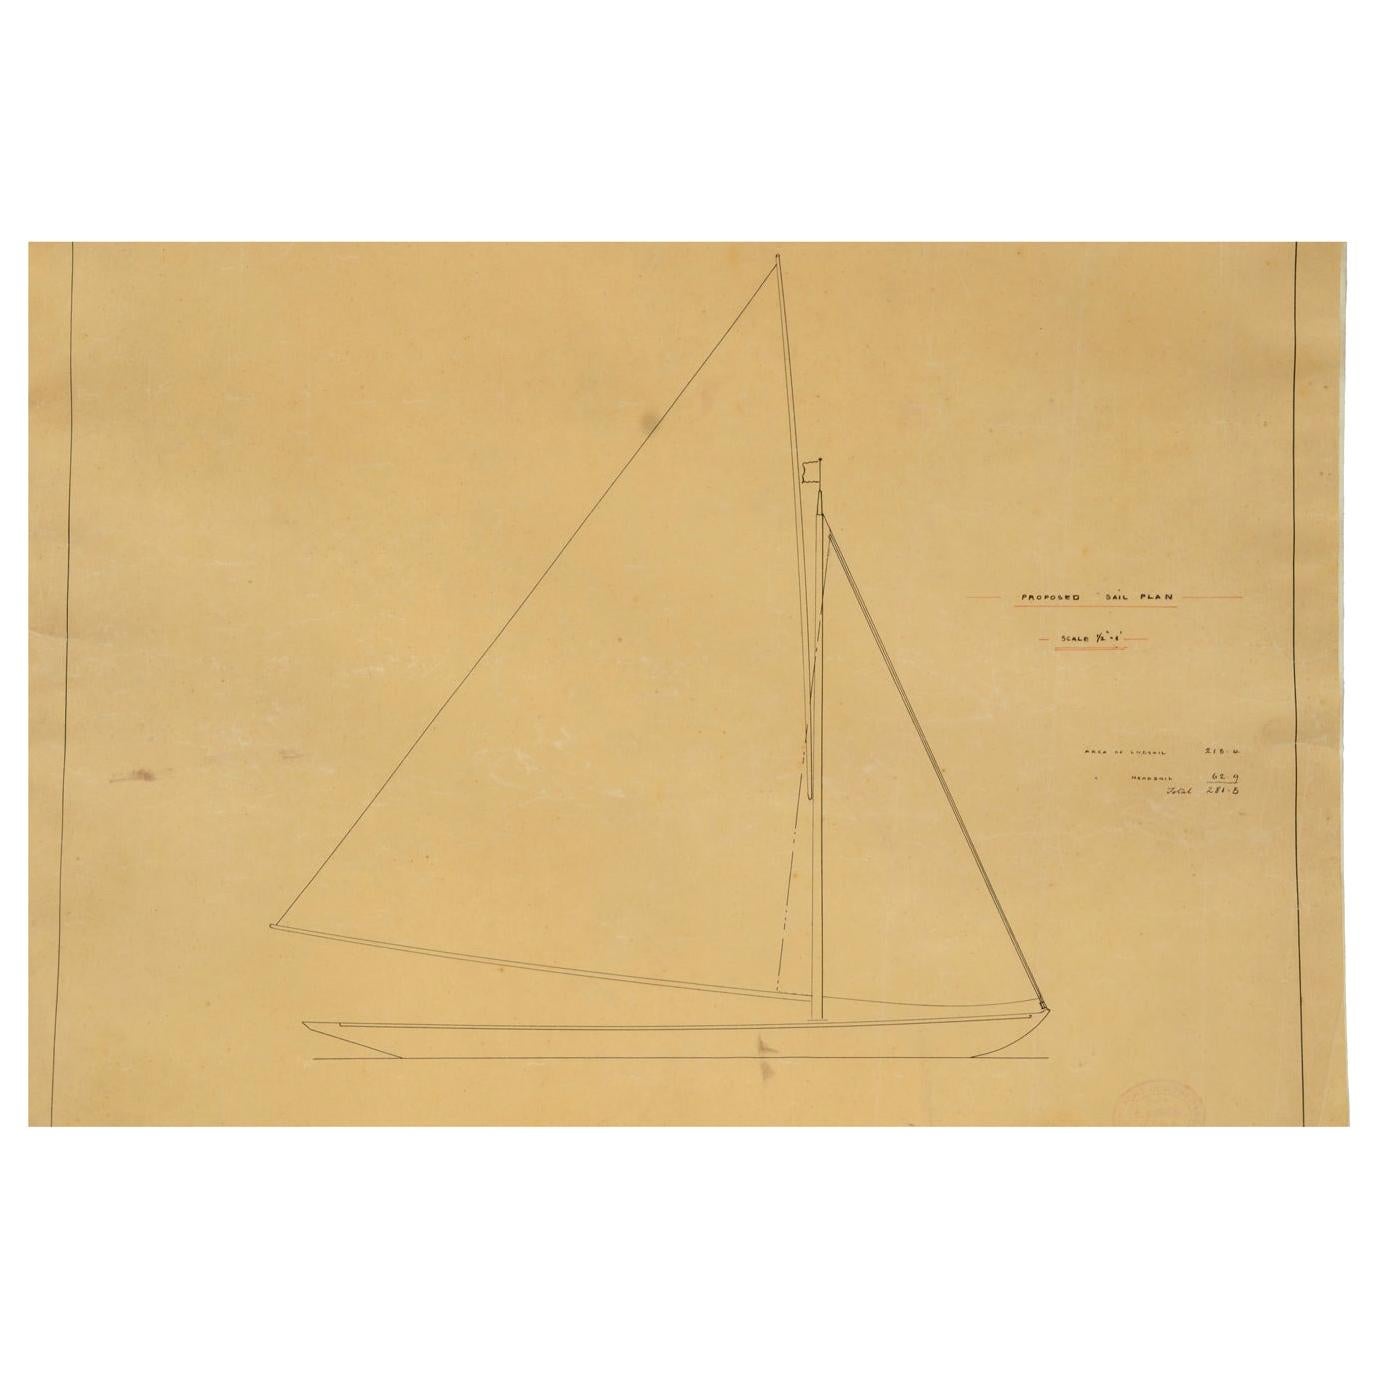 Ein aus den Archiven von Uffa Fox stammendes und nie in den Handel gekommenes Projekt, das den Segelplan eines Bootes von C. Sibbick darstellt. Maße: 57 x 46,5 (H) cm - 22,44 x 18,30 (H) Zoll. 

Charles Sibbick, 1849 in England geboren, begann seine